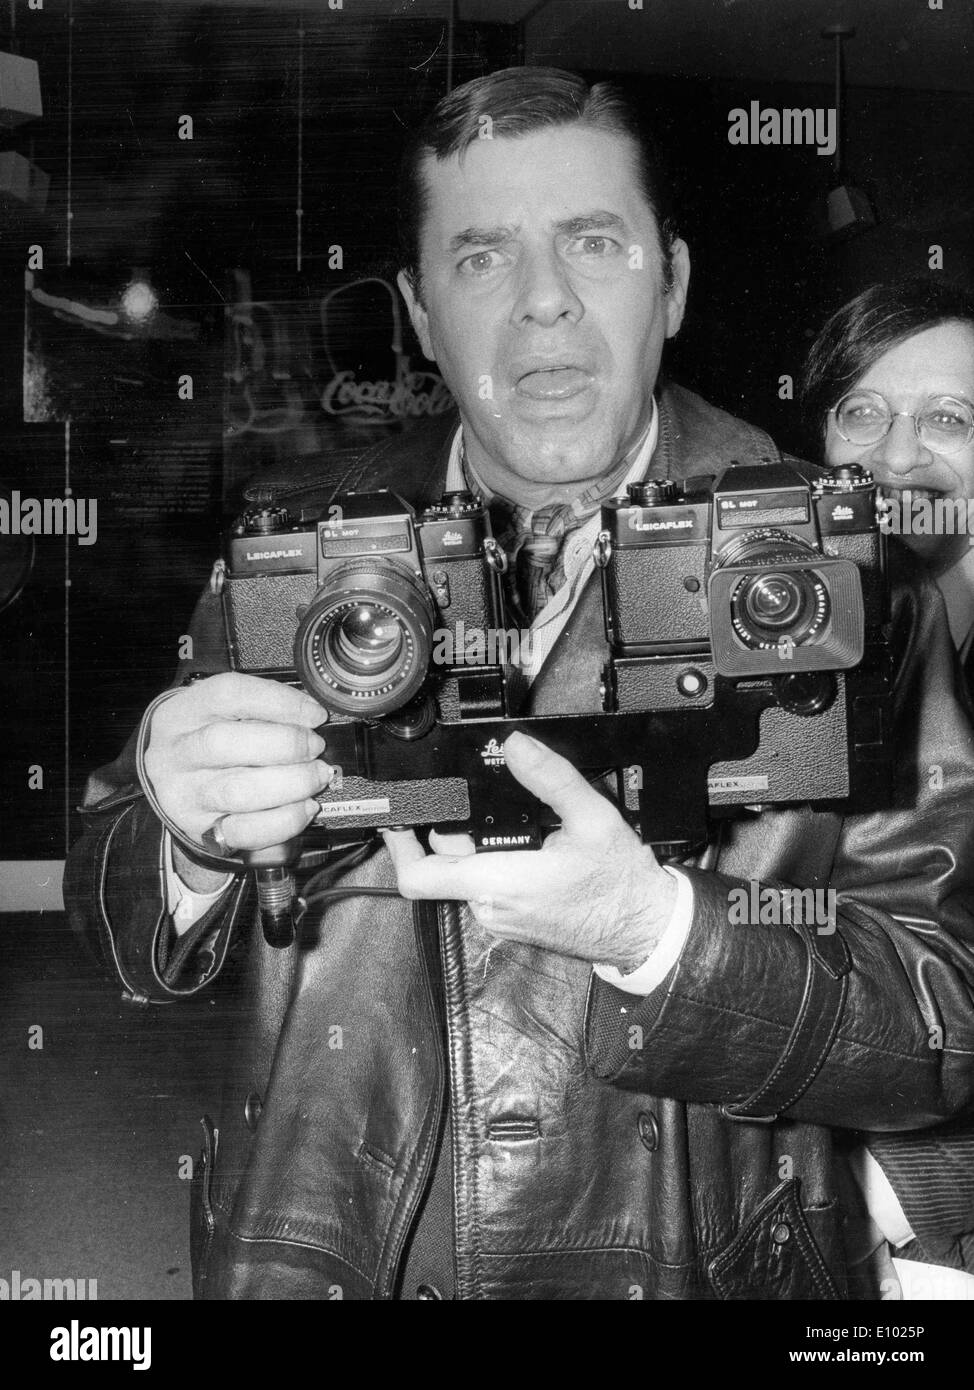 L'acteur Jerry Lewis à galerie de photographie Banque D'Images